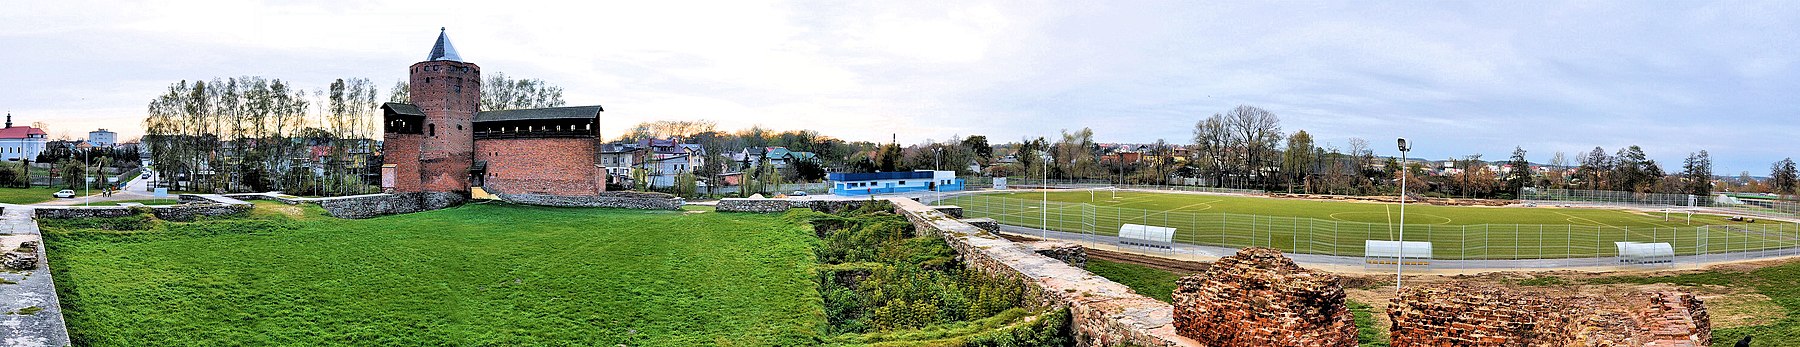 הריסות הטירה ואצטדיון המועדון RKS Mazovia שליד הטירה..jpg